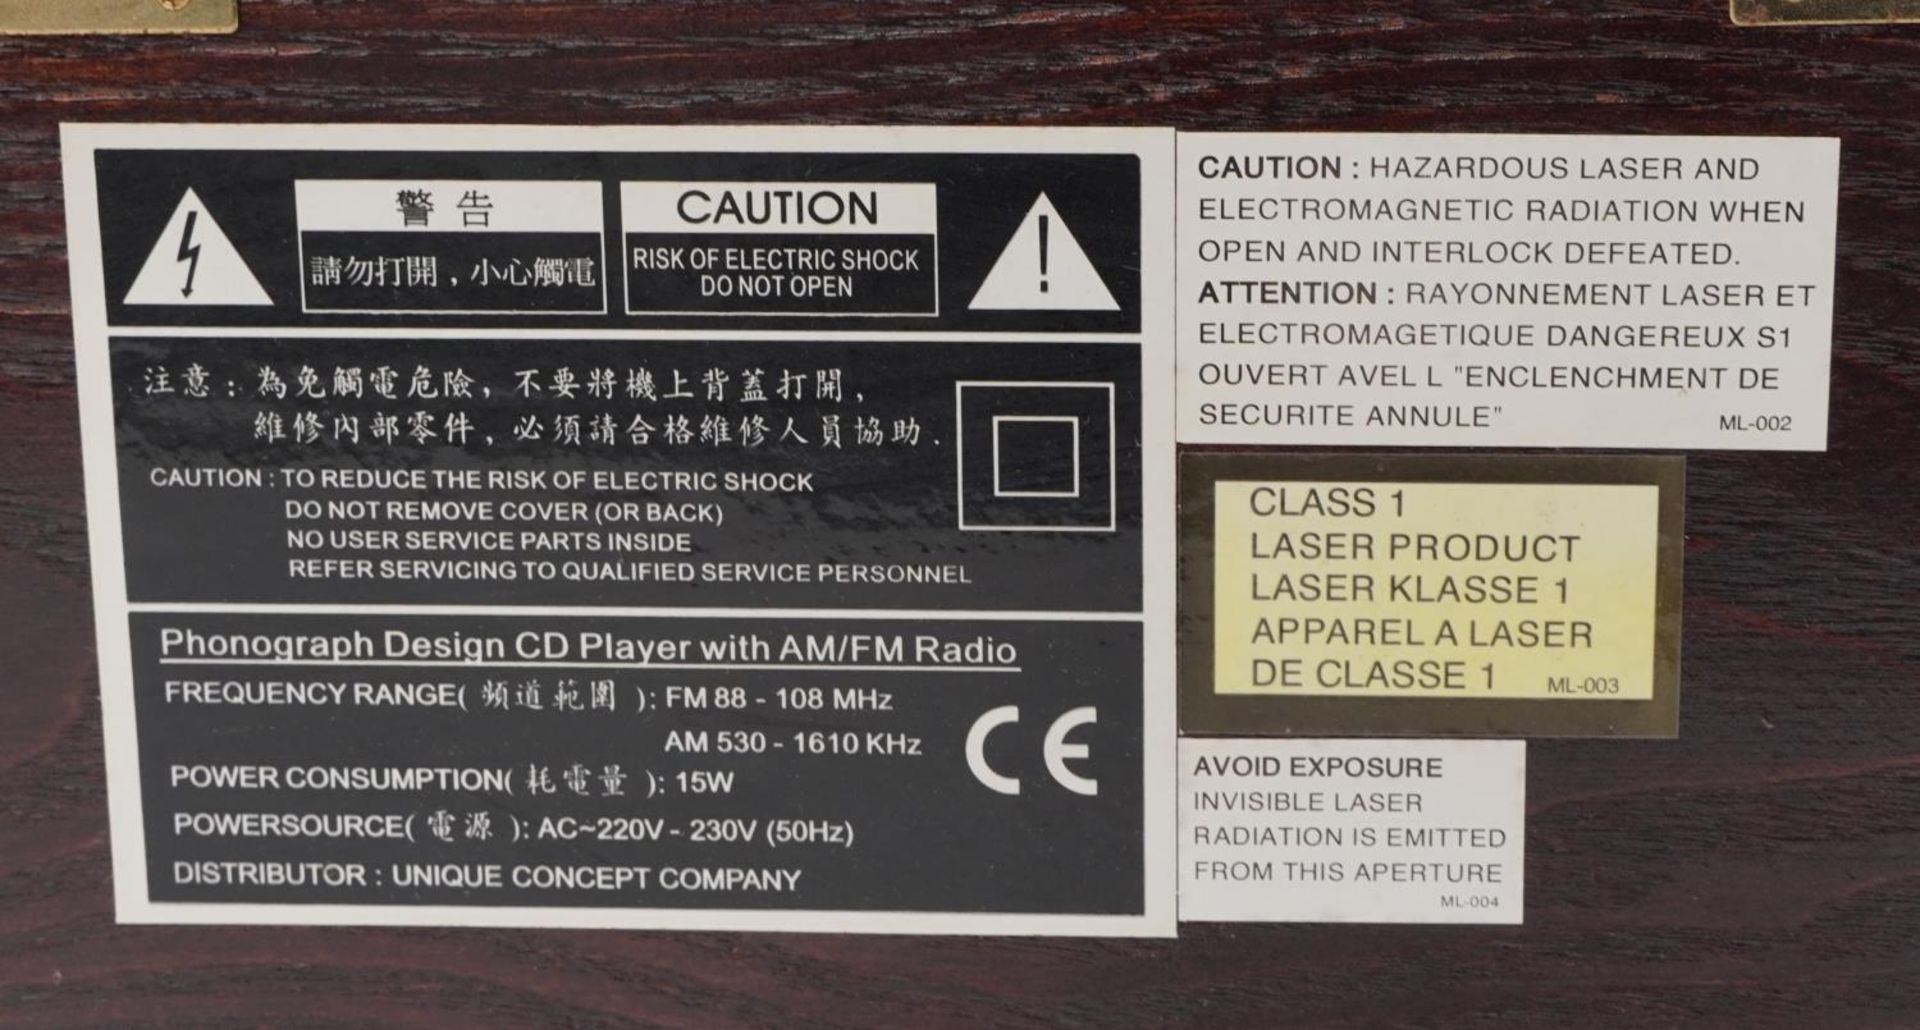 Retro Coca Cola advertising phonograph design CD player with AM/FM radio, 27cm H x 34cm W x 23cm D : - Image 5 of 5